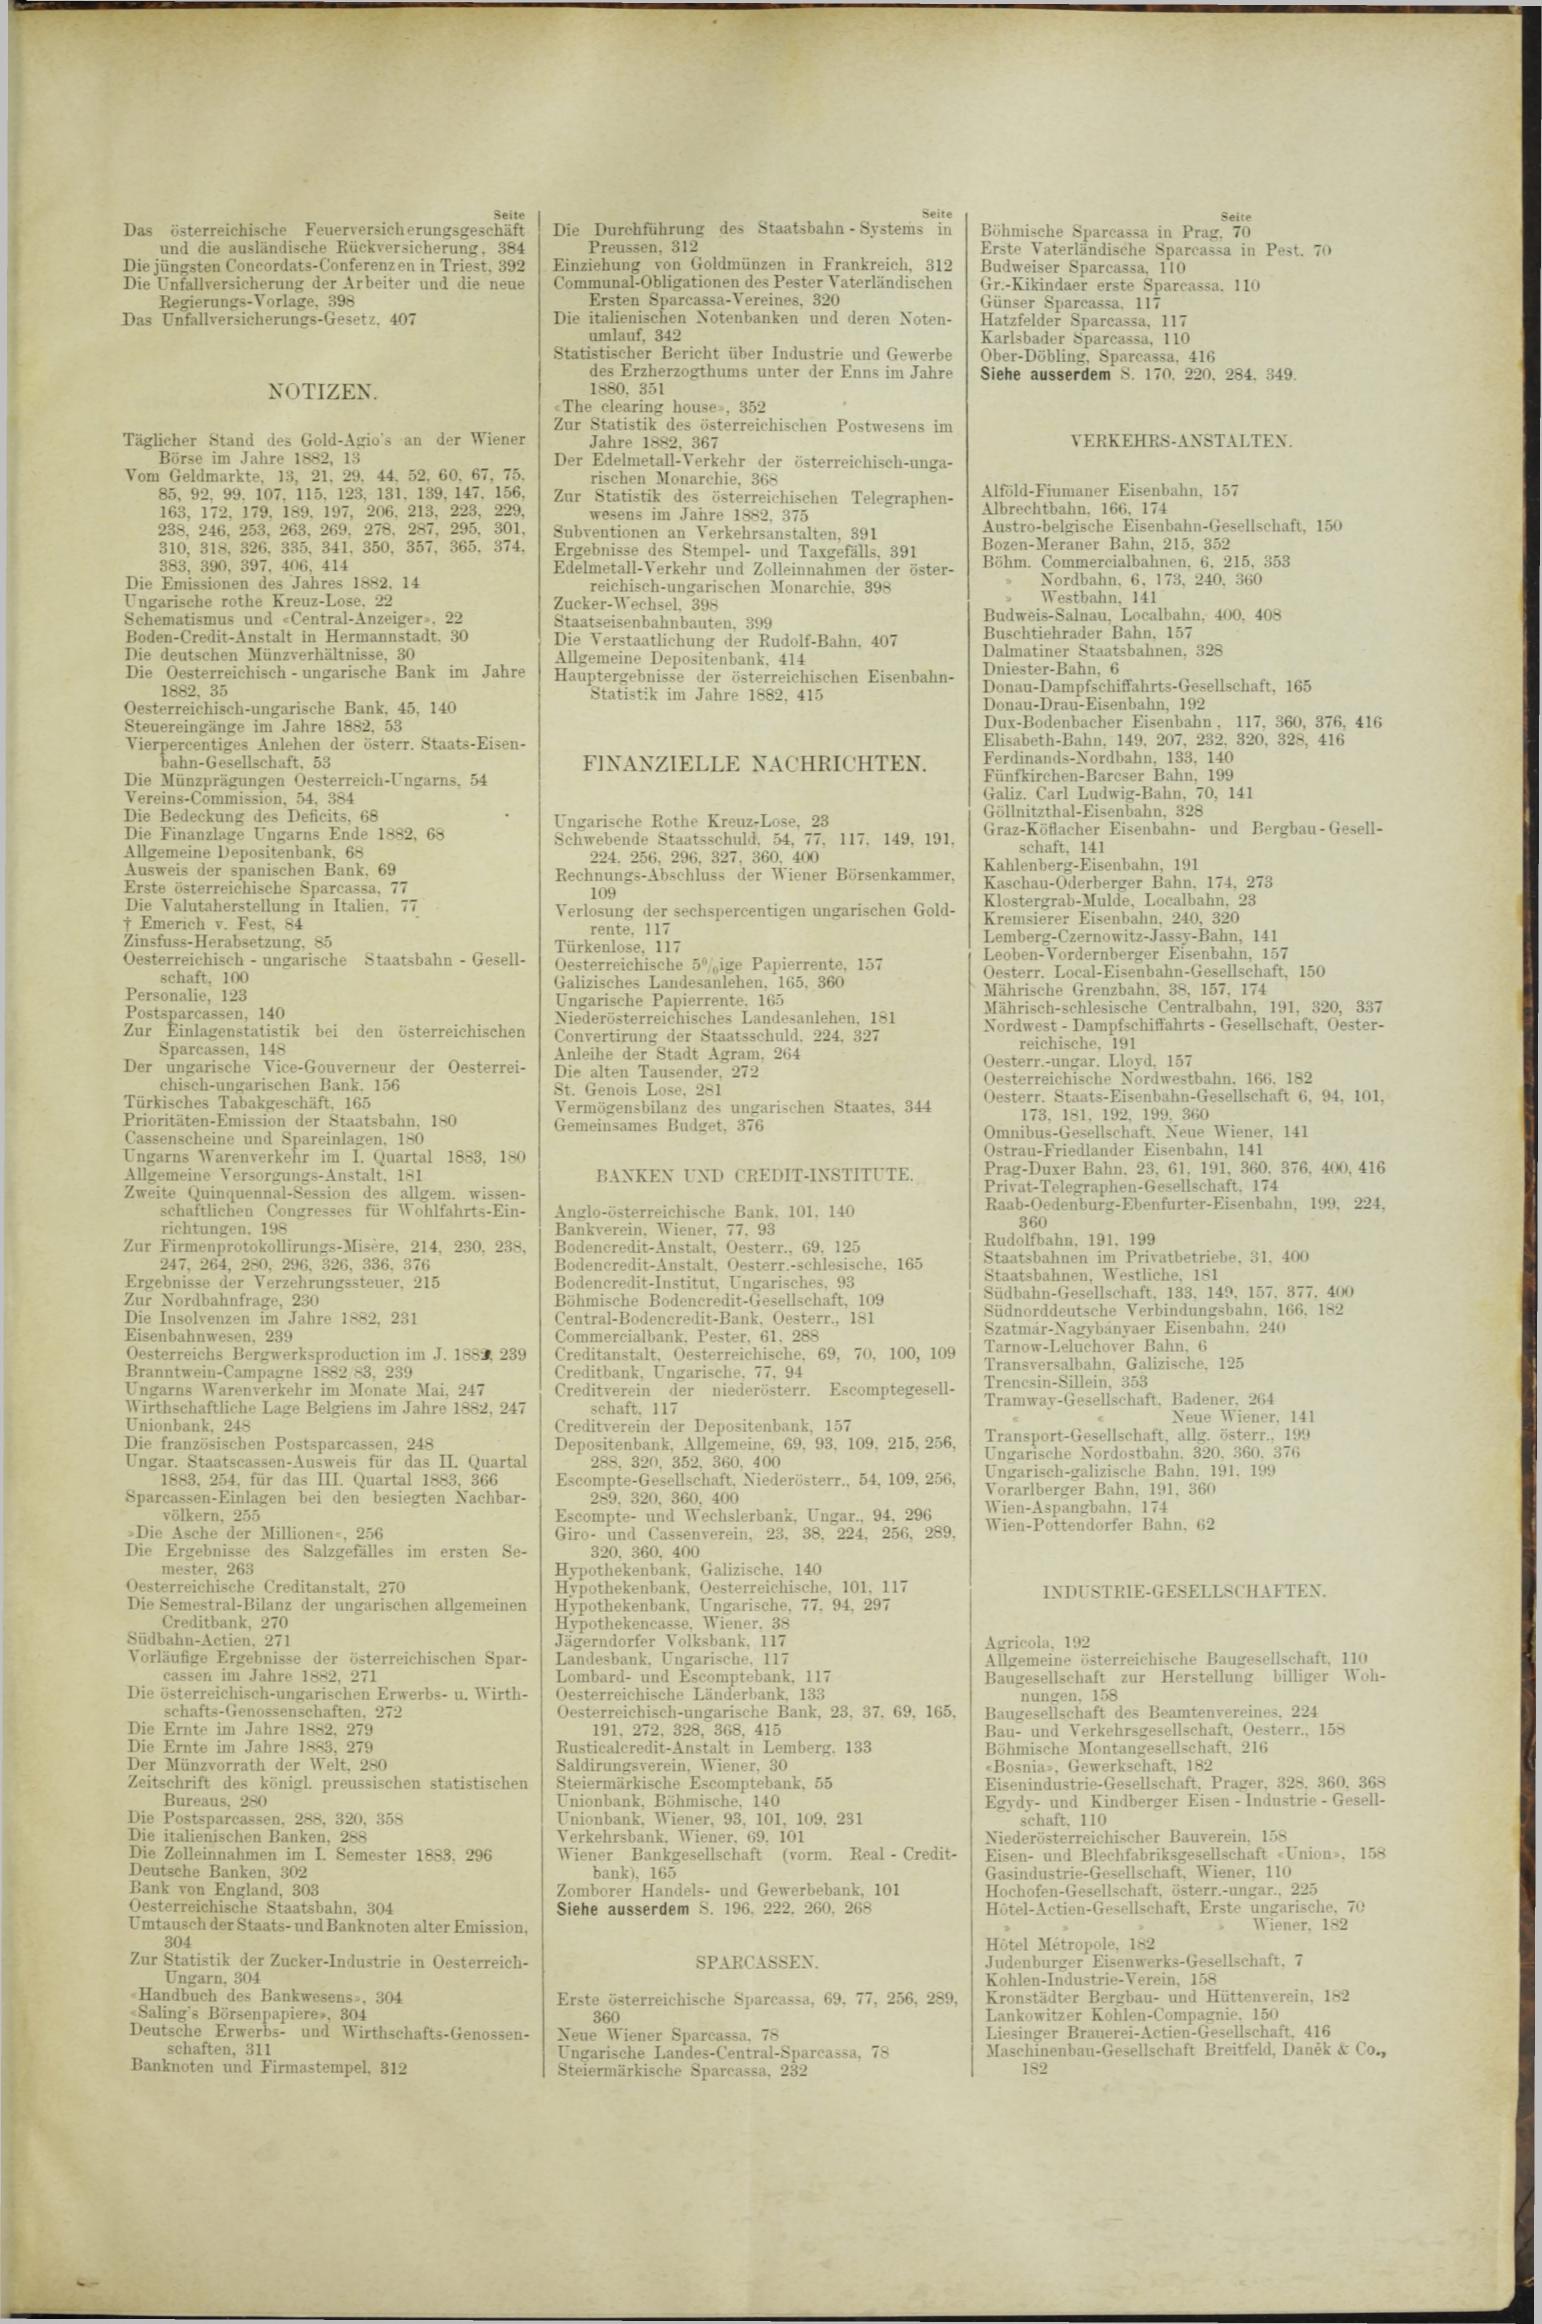 Der Tresor 19.07.1883 - Seite 11